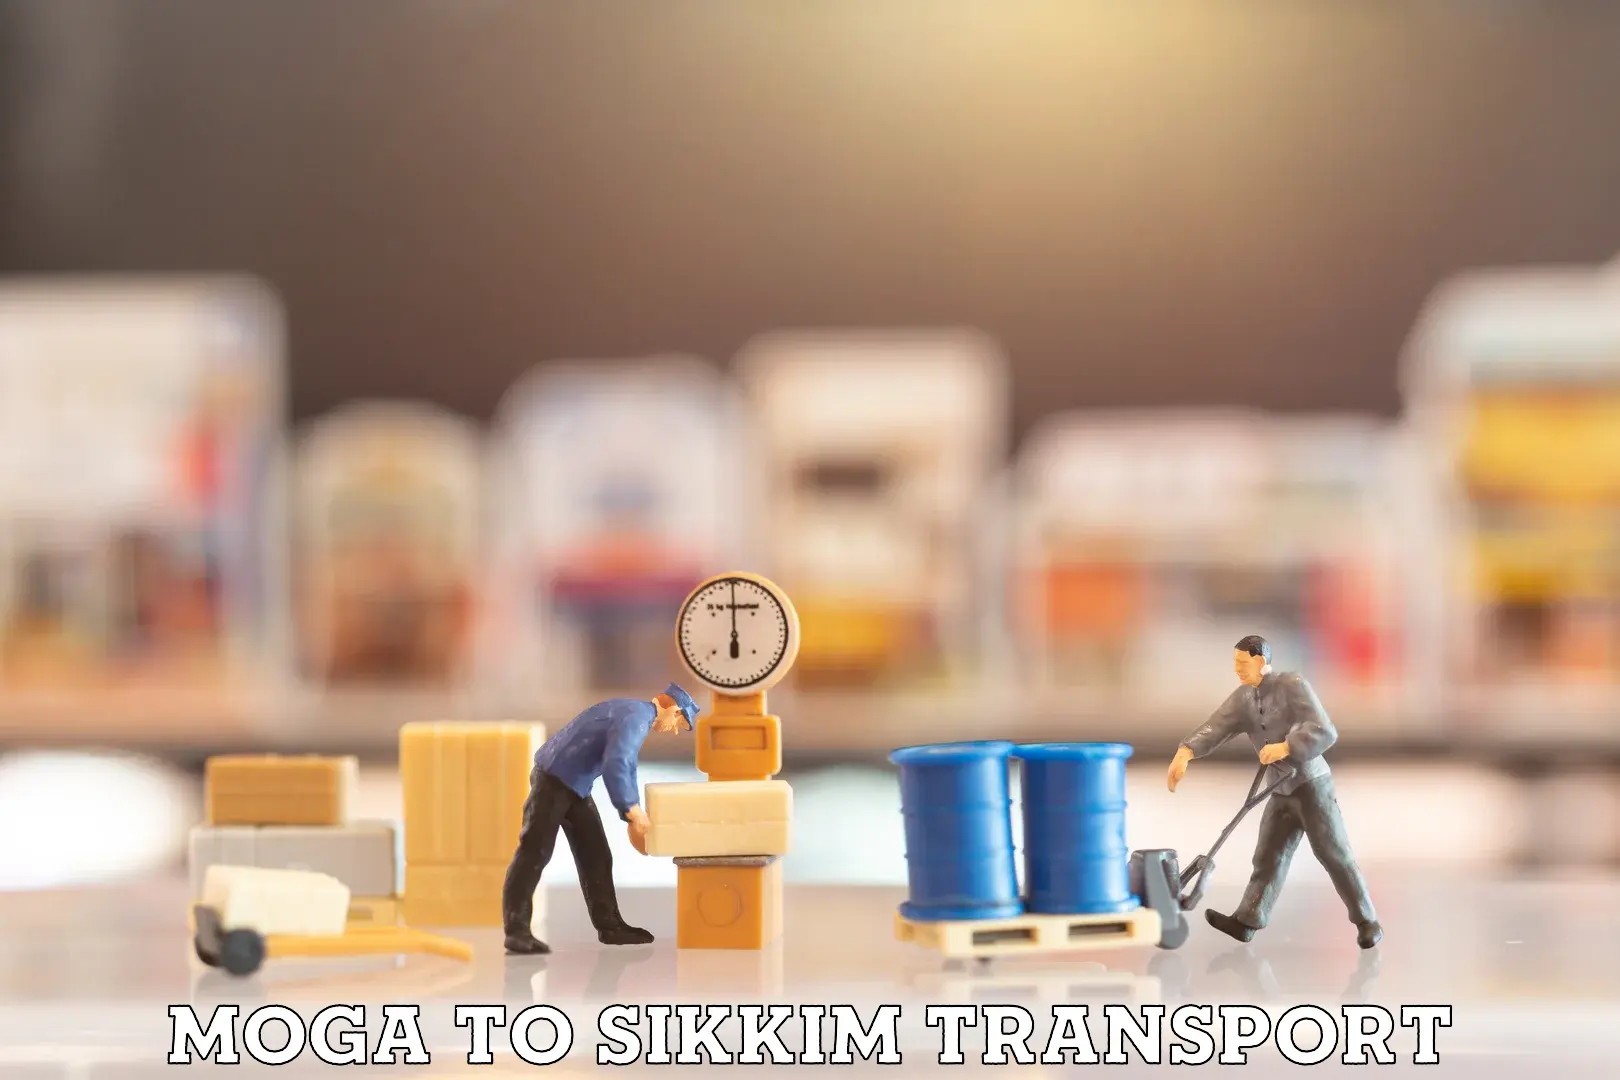 Nearest transport service Moga to North Sikkim